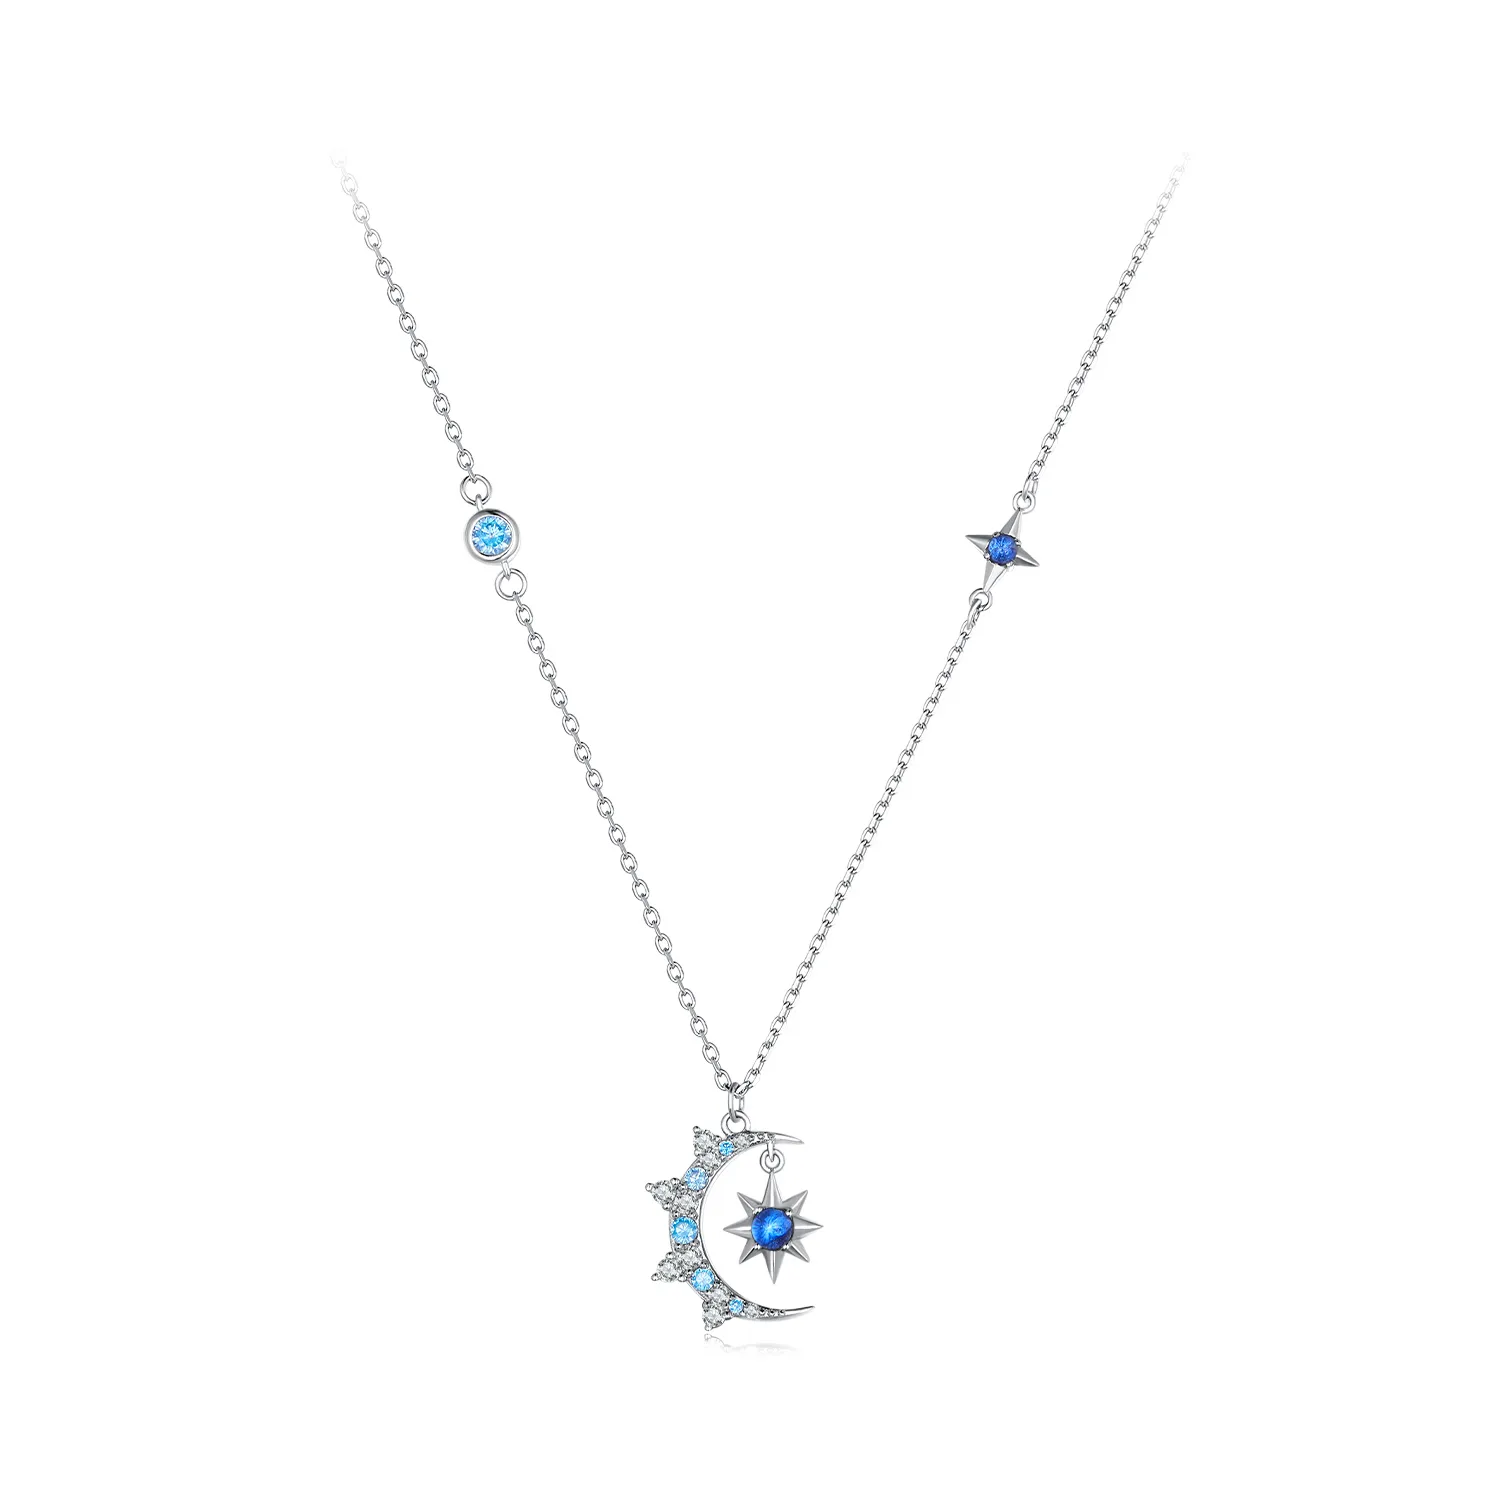 Pandora Style Moon Starburst Necklace - BSN347